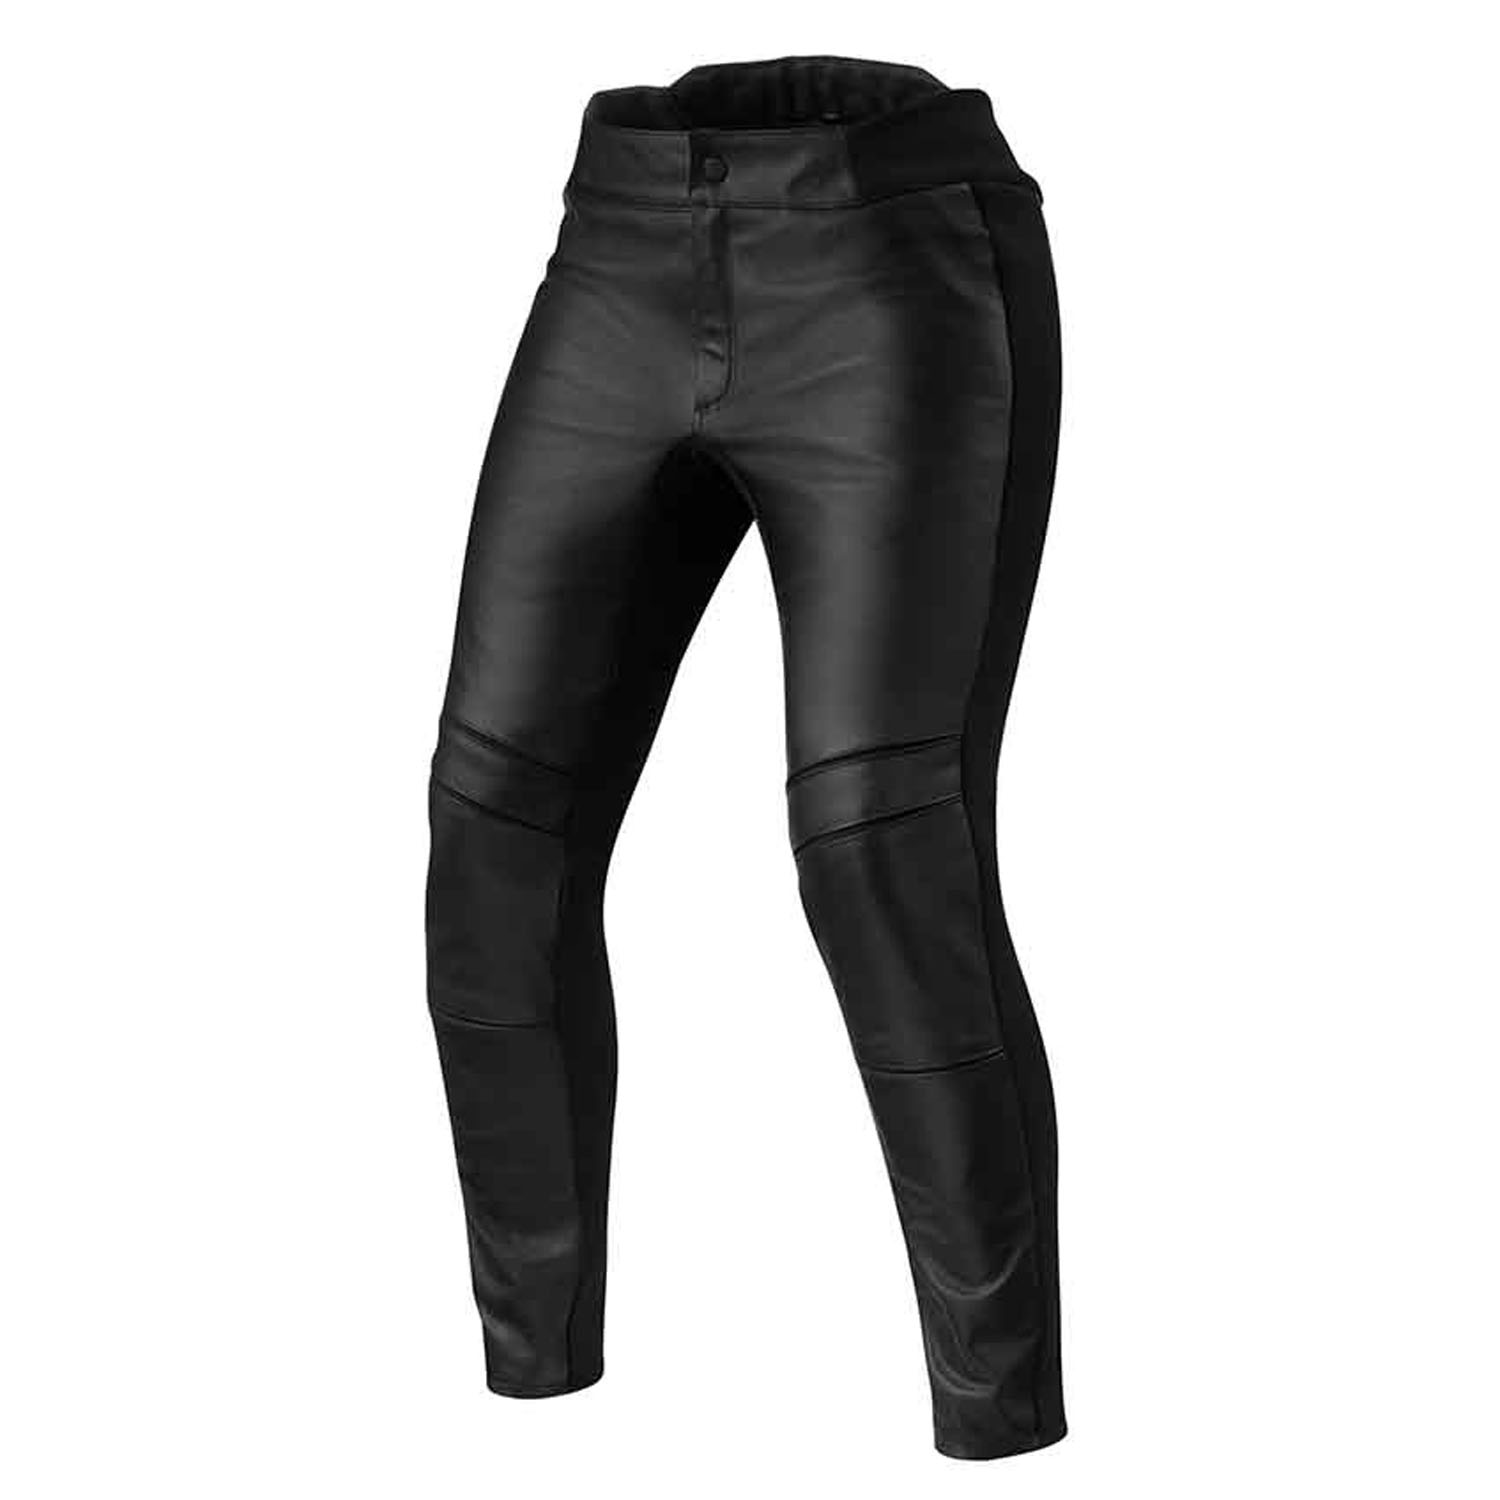 REV'IT! Maci Ladies Black Standard Motorcycle Pants Size 34